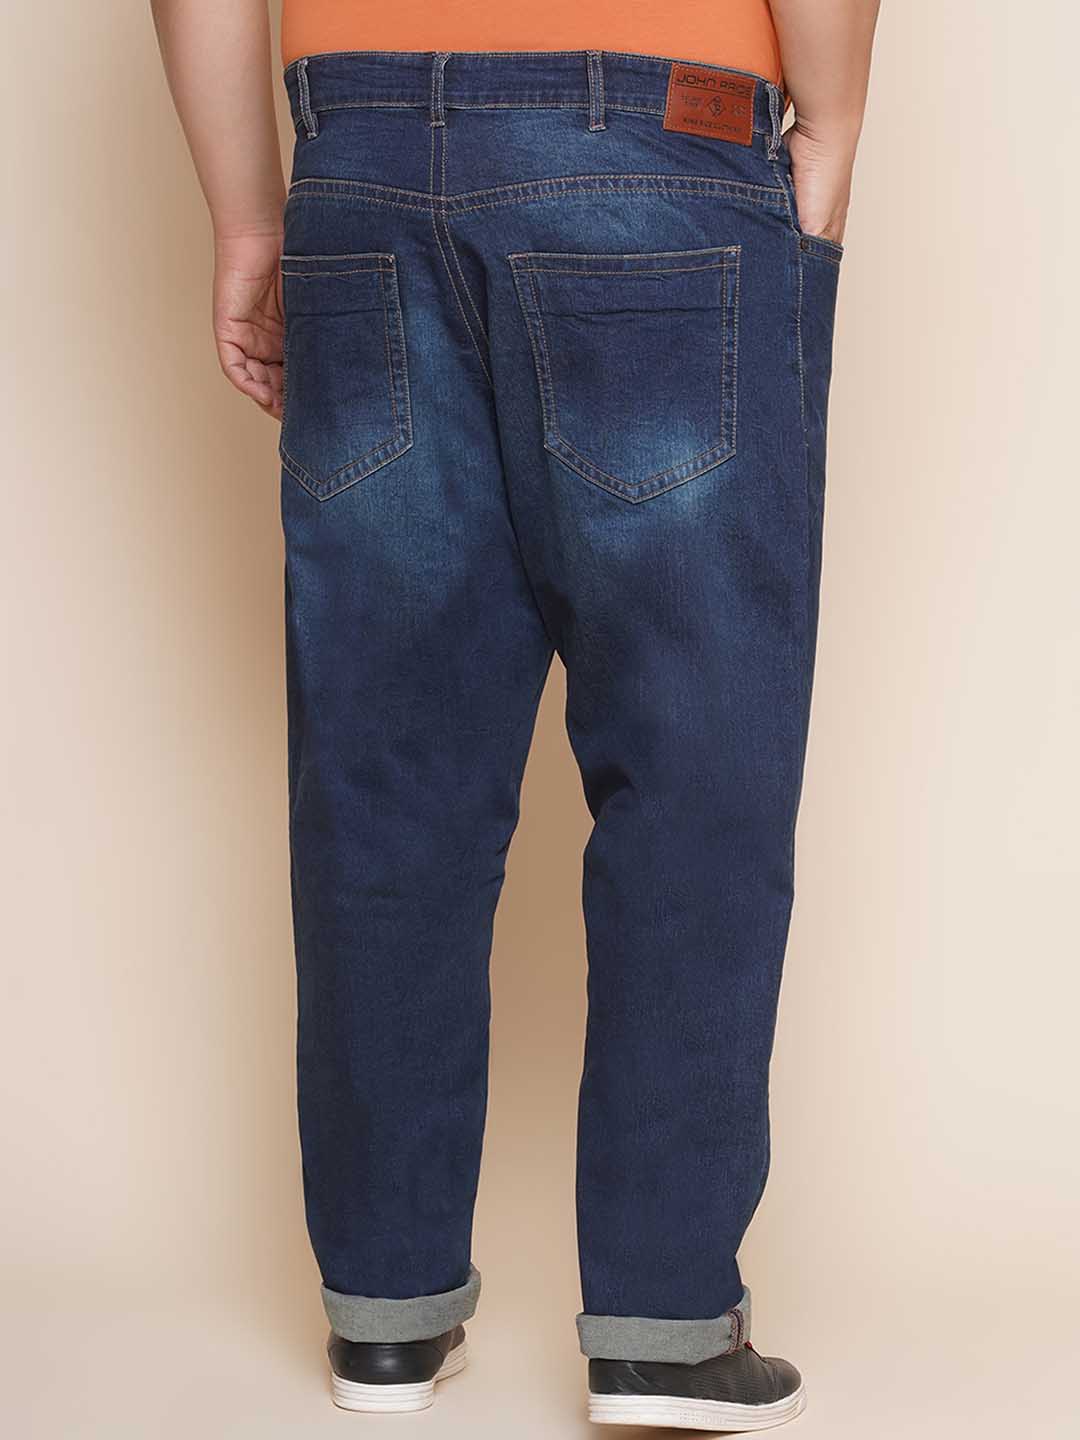 bottomwear/jeans/JPJ27032/jpj27032-5.jpg